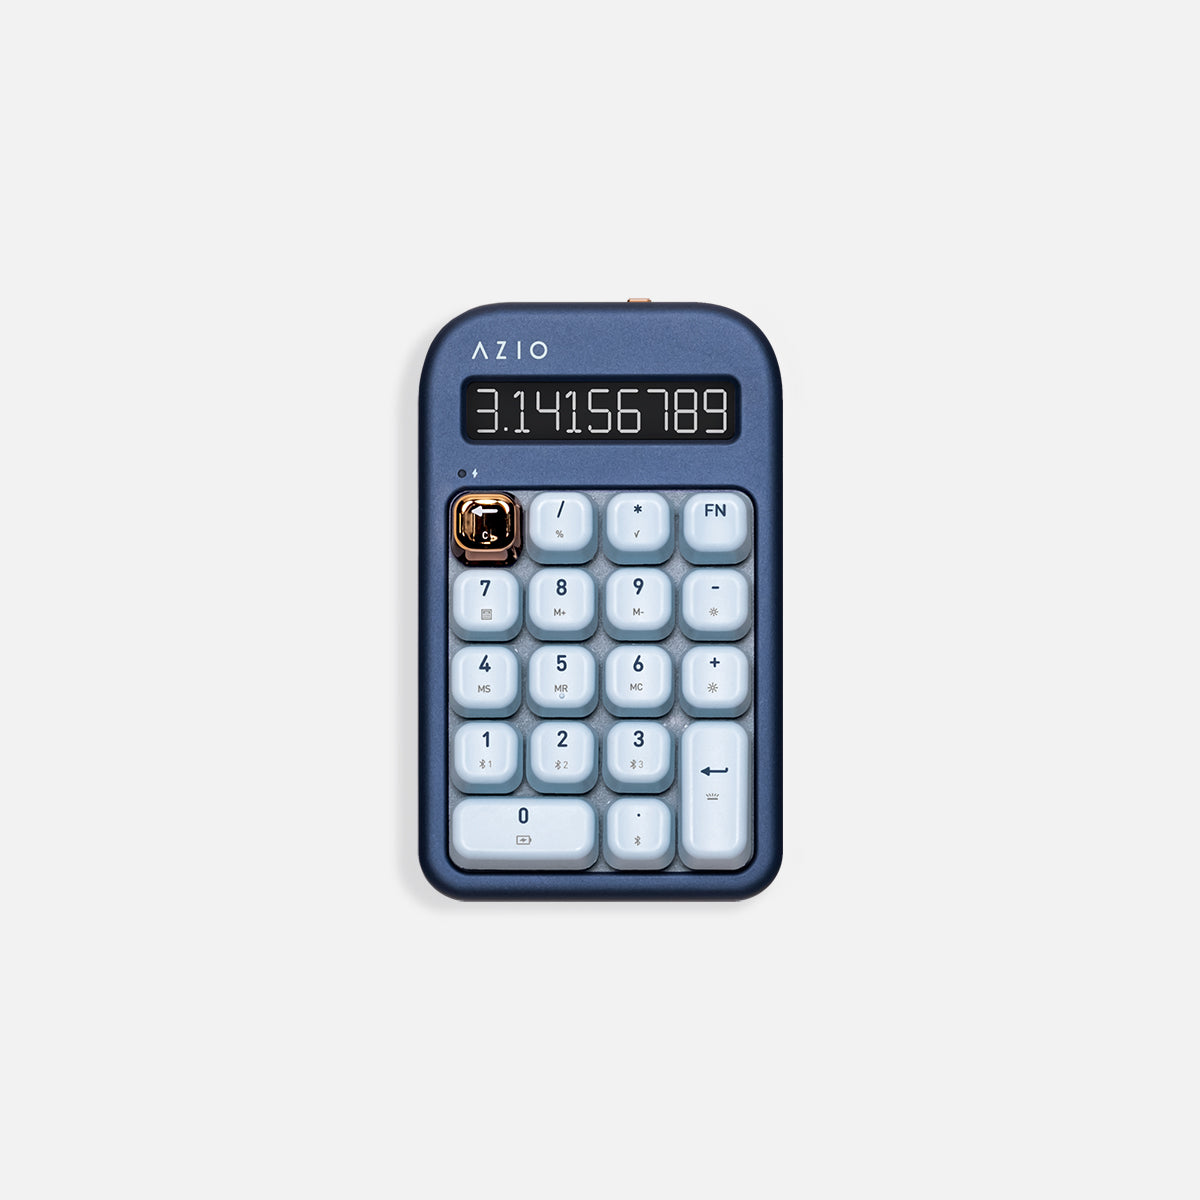 Izo numerická klávesnica / kalkulačka (modrý spínač)